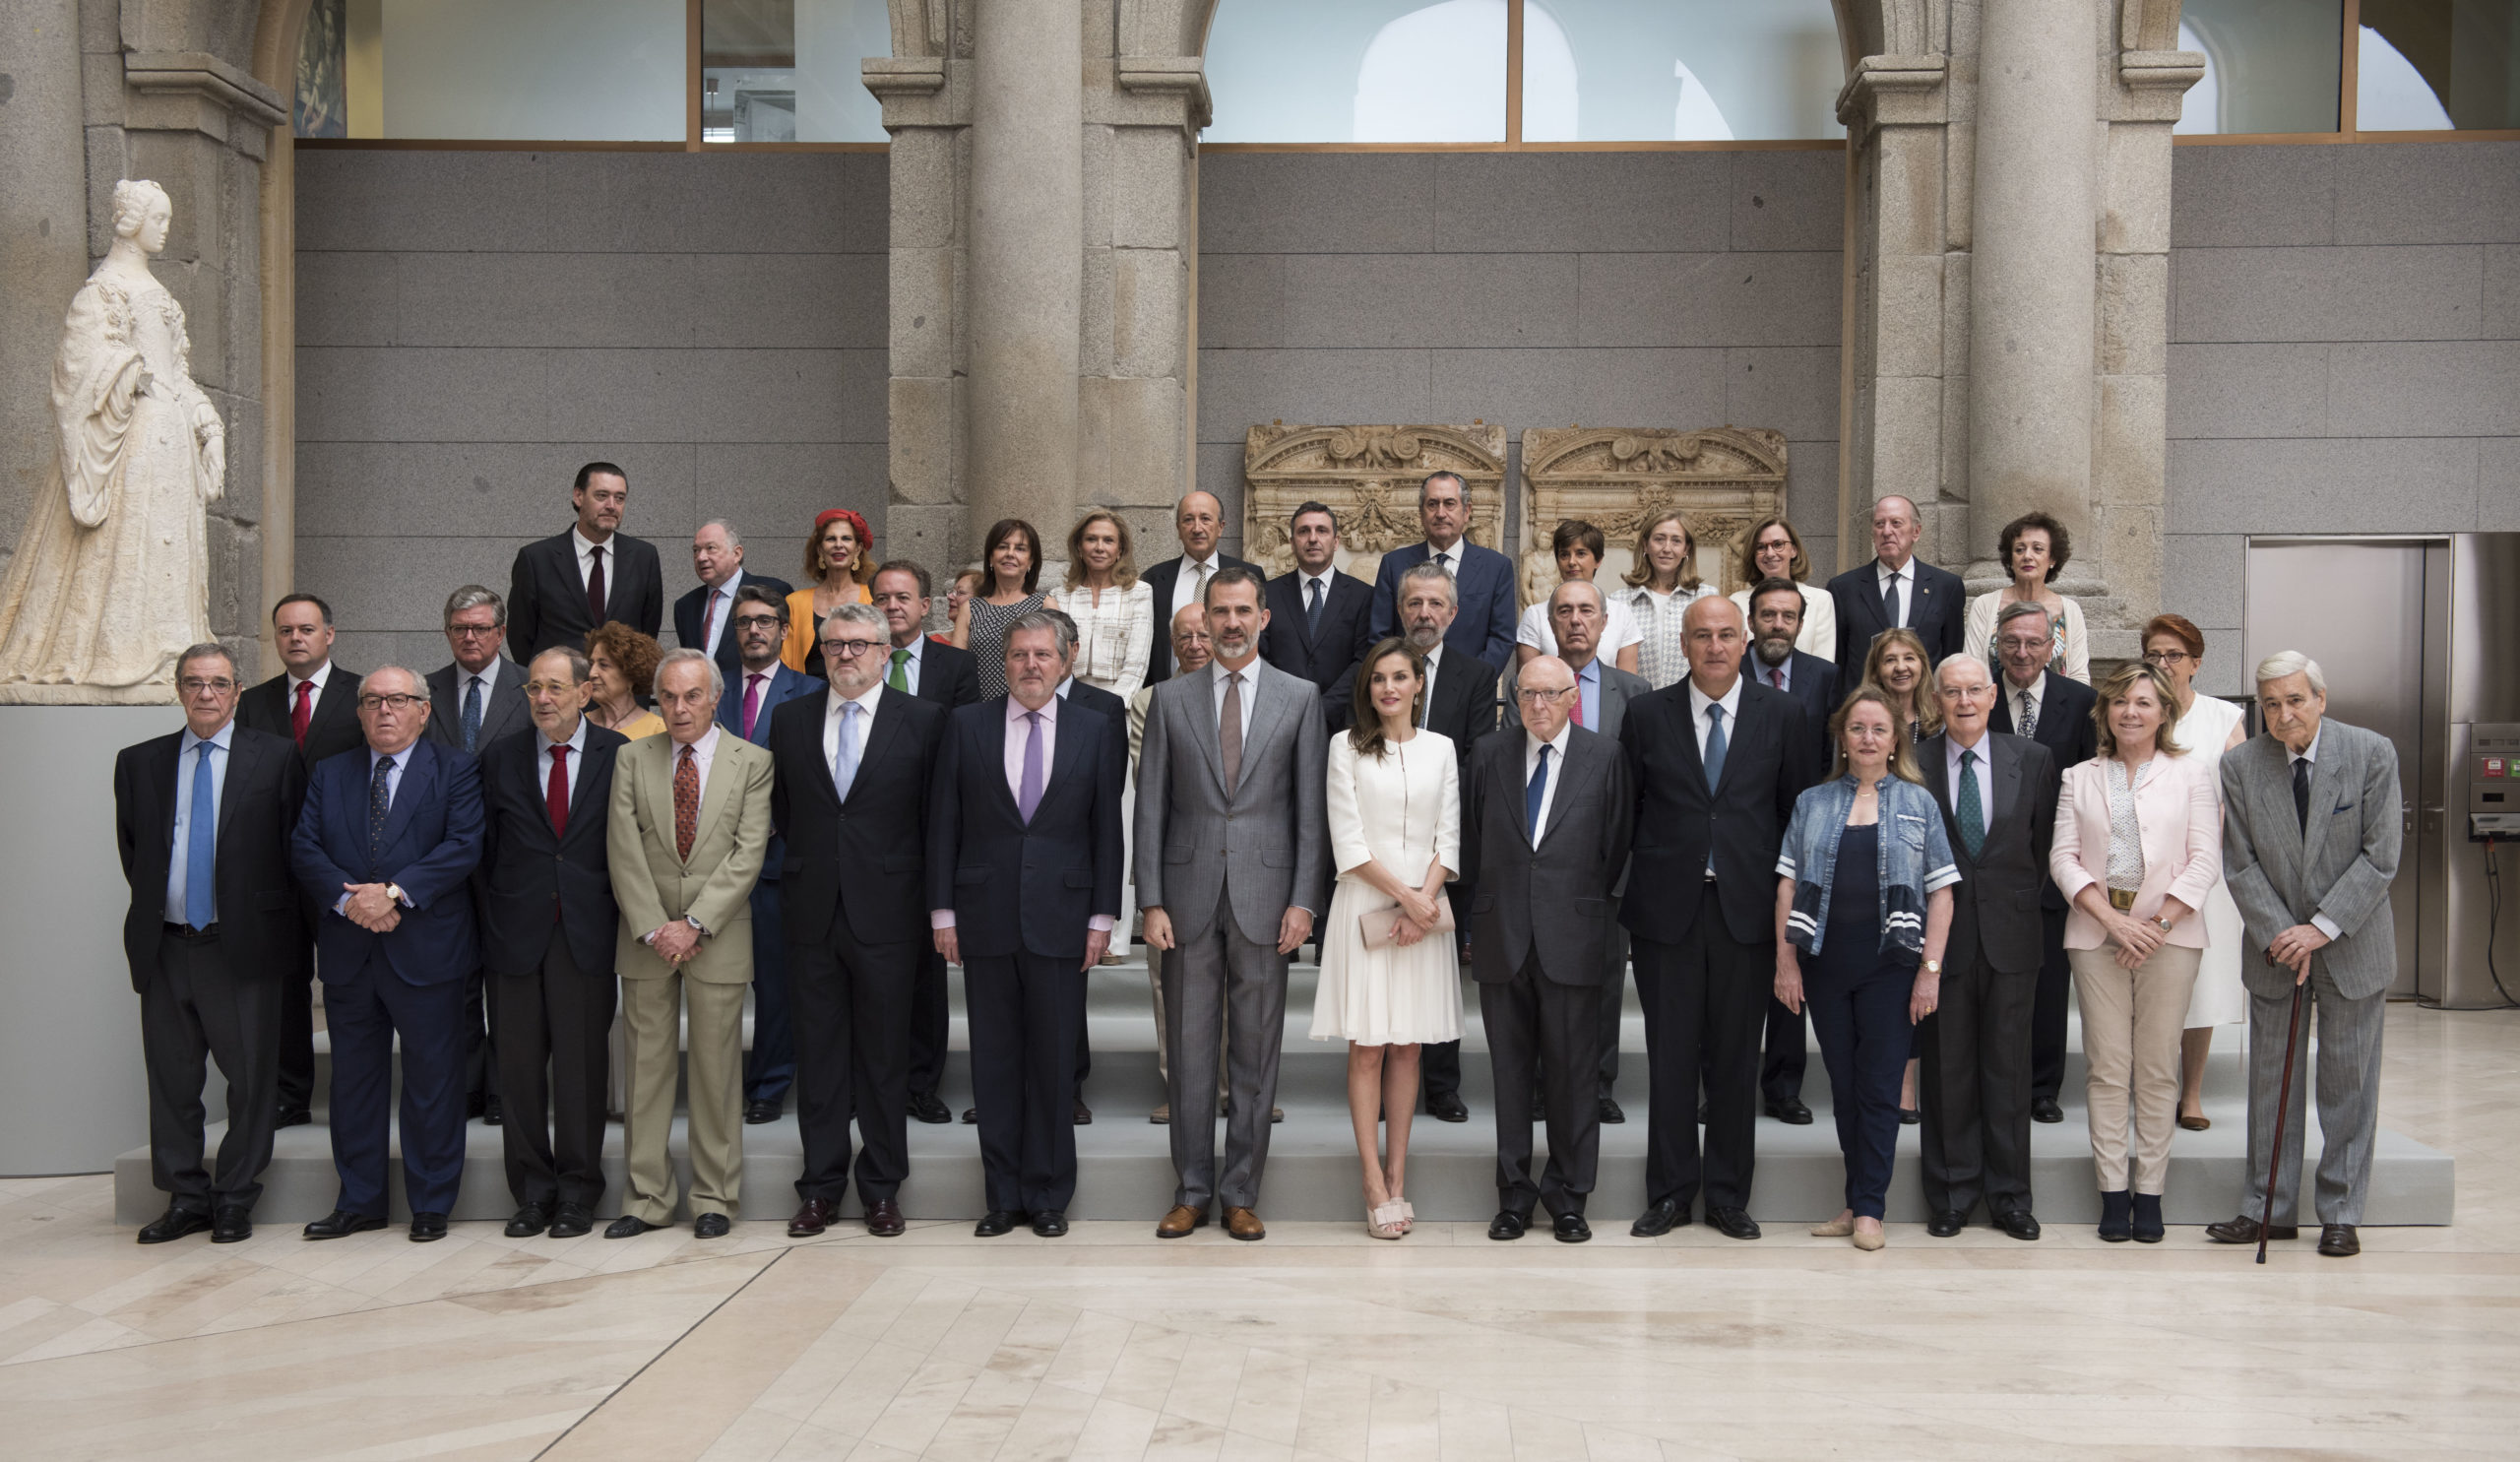 El programa extraordinario del Prado por su bicentenario